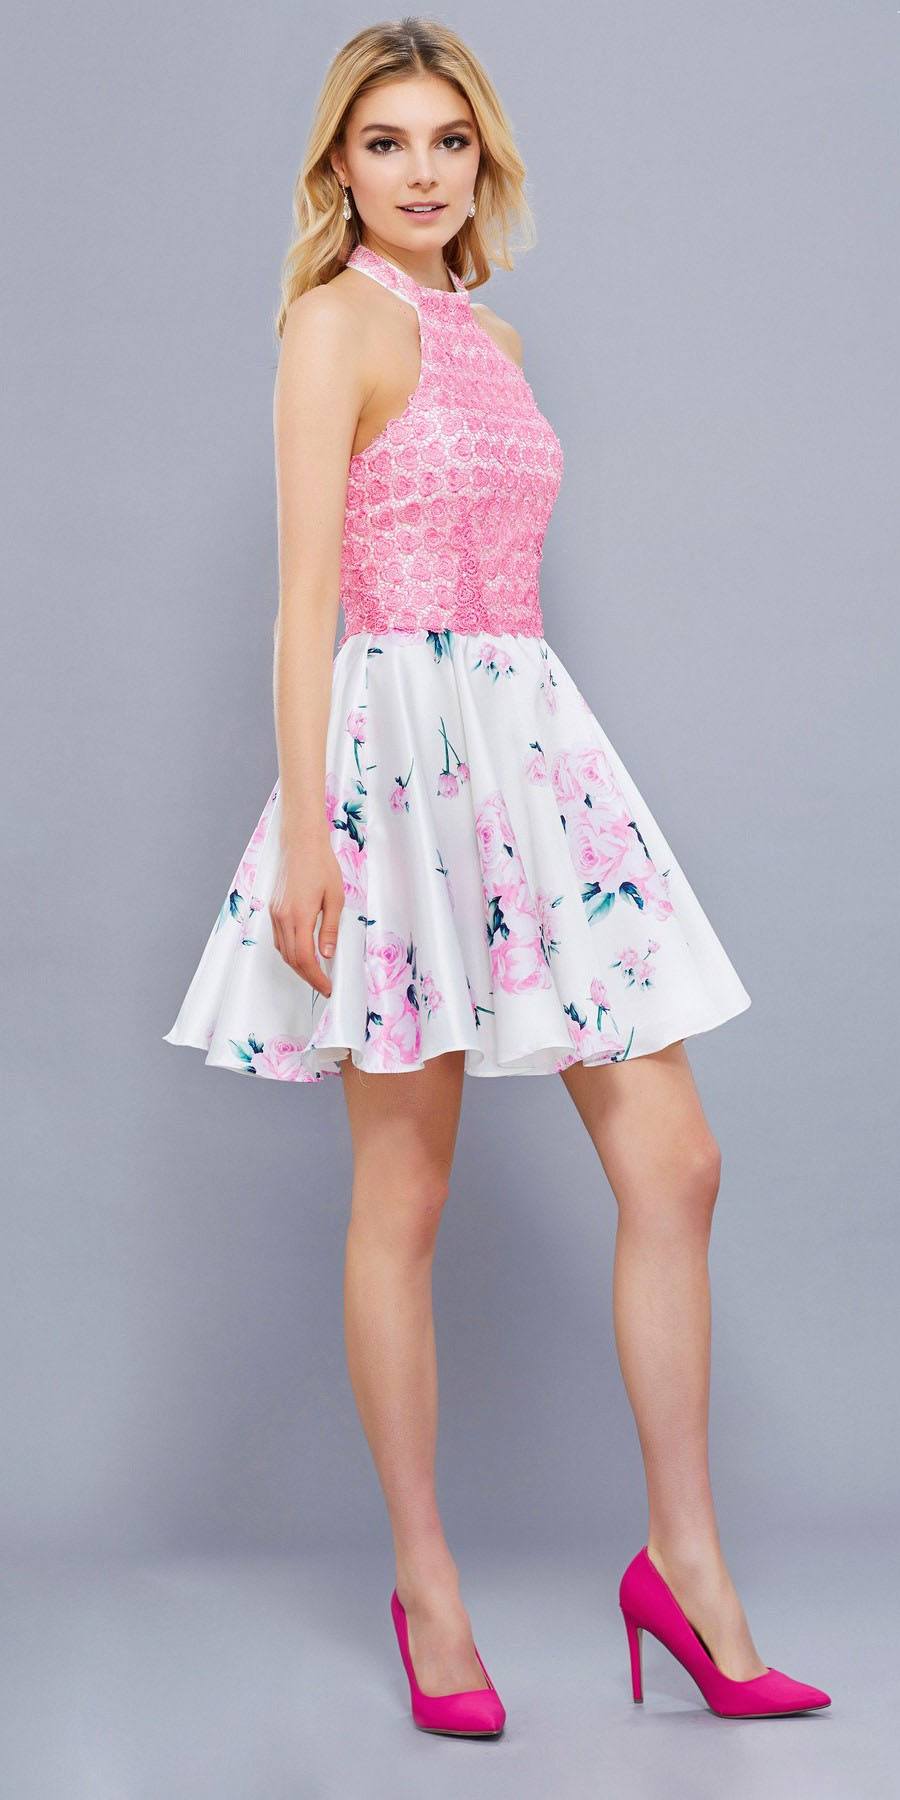 Pink Applique Top Short Halter Prom Dress Floral Printed Skirt